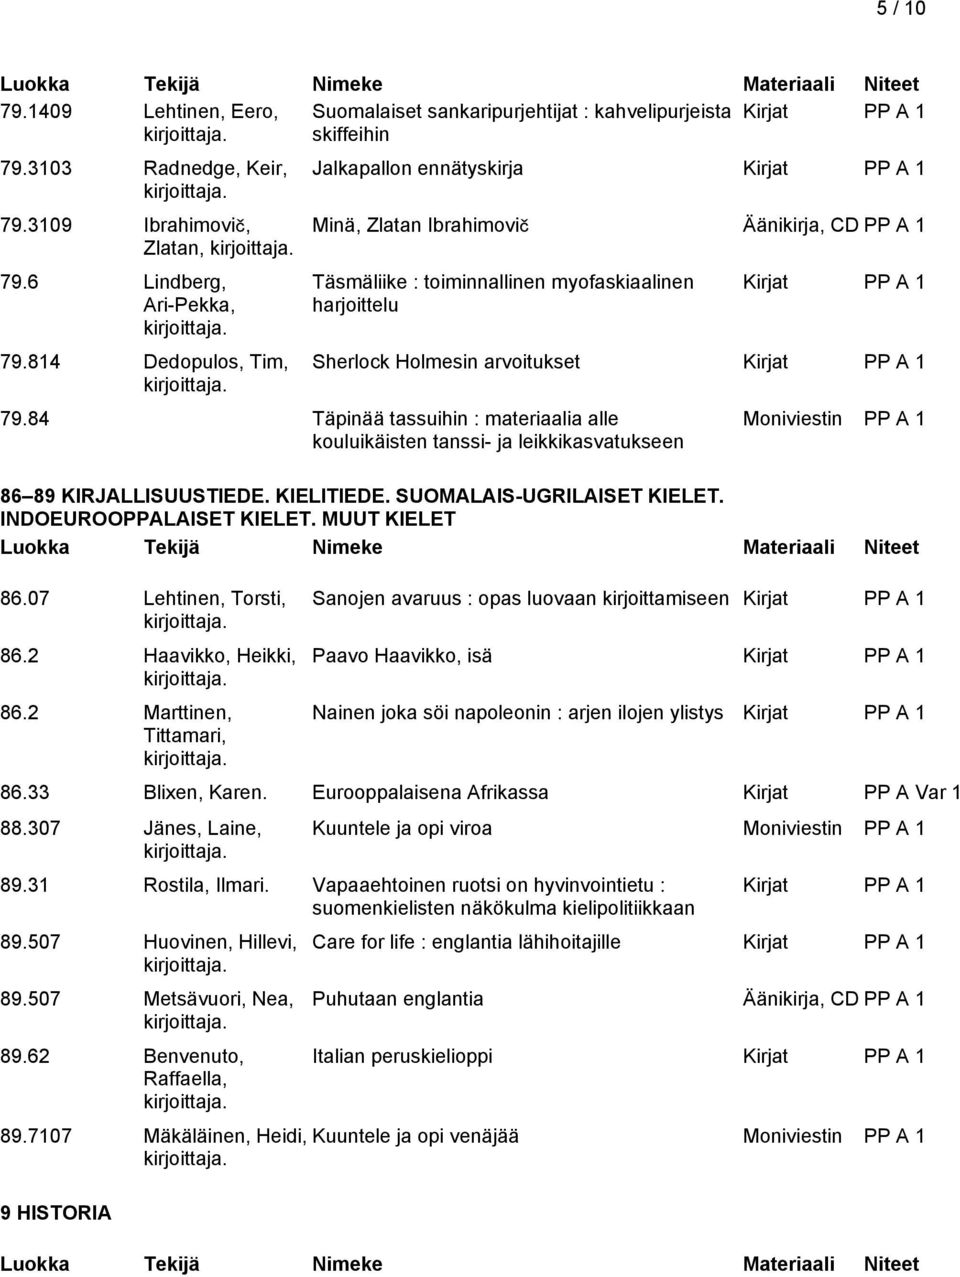 84 Täpinää tassuihin : materiaalia alle kouluikäisten tanssi- ja leikkikasvatukseen 86.07 Lehtinen, Torsti, 86.2 Haavikko, Heikki, 86.